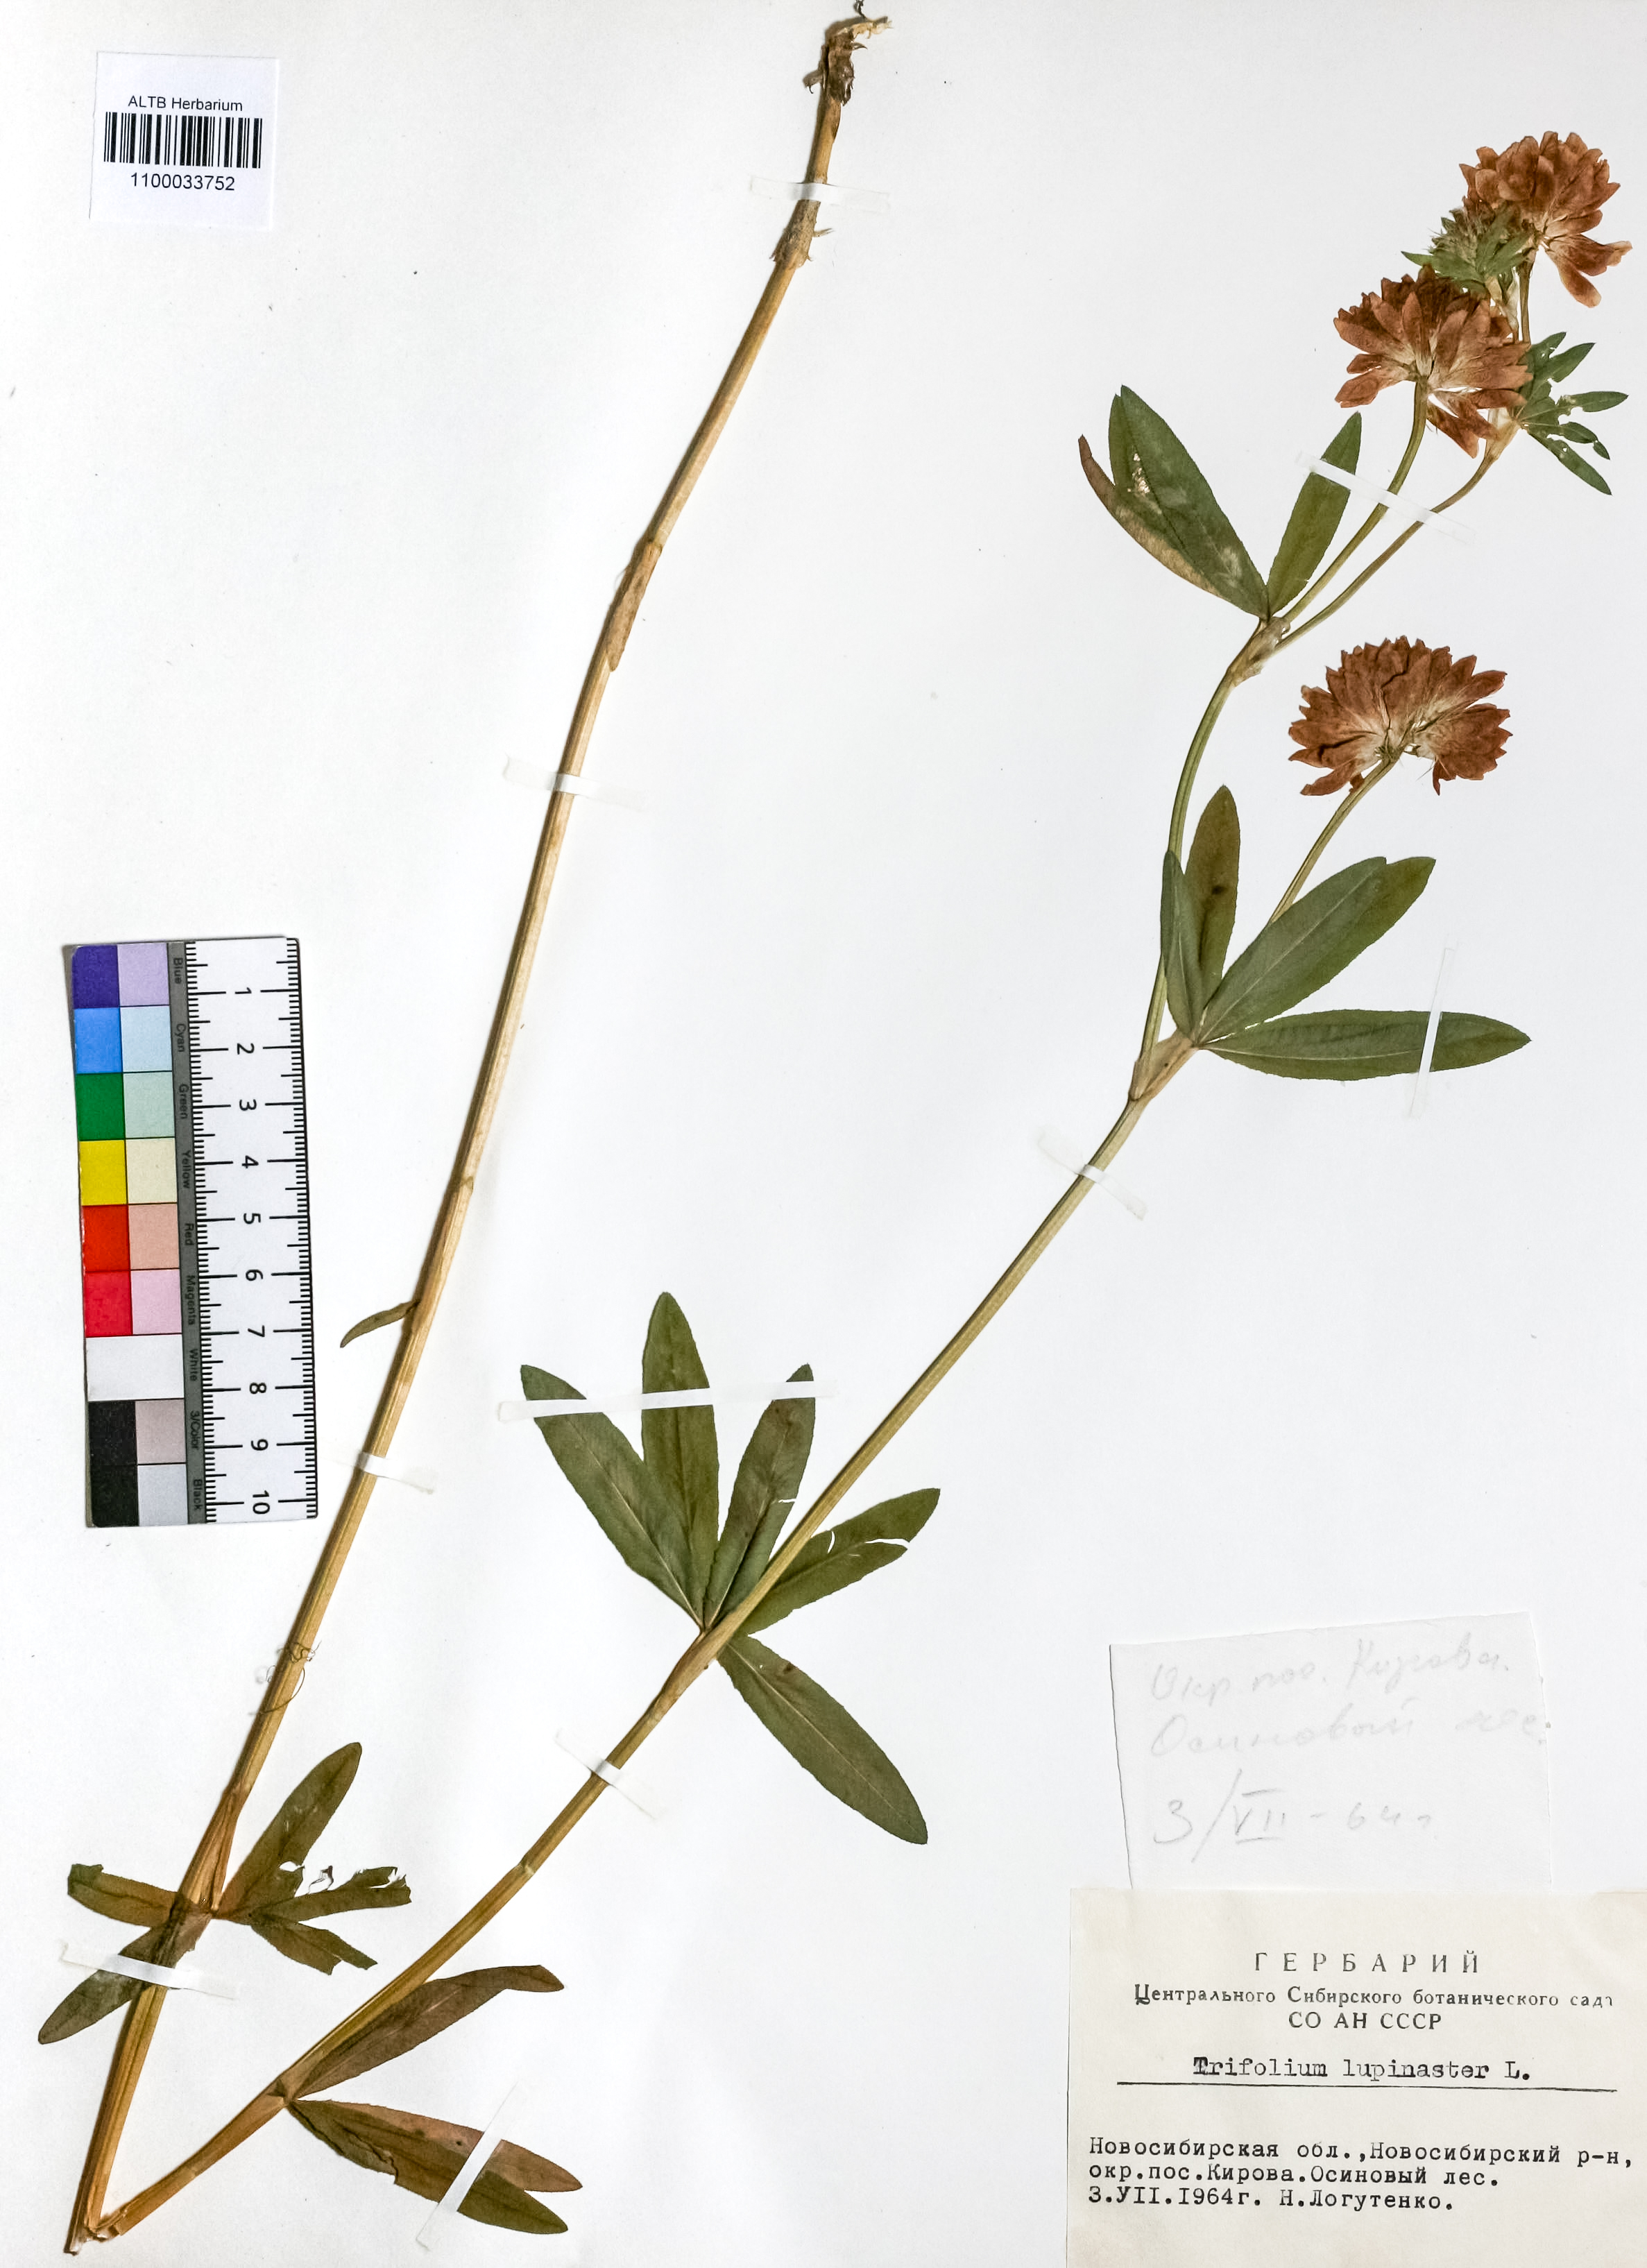 Trifolium lupinaster L.